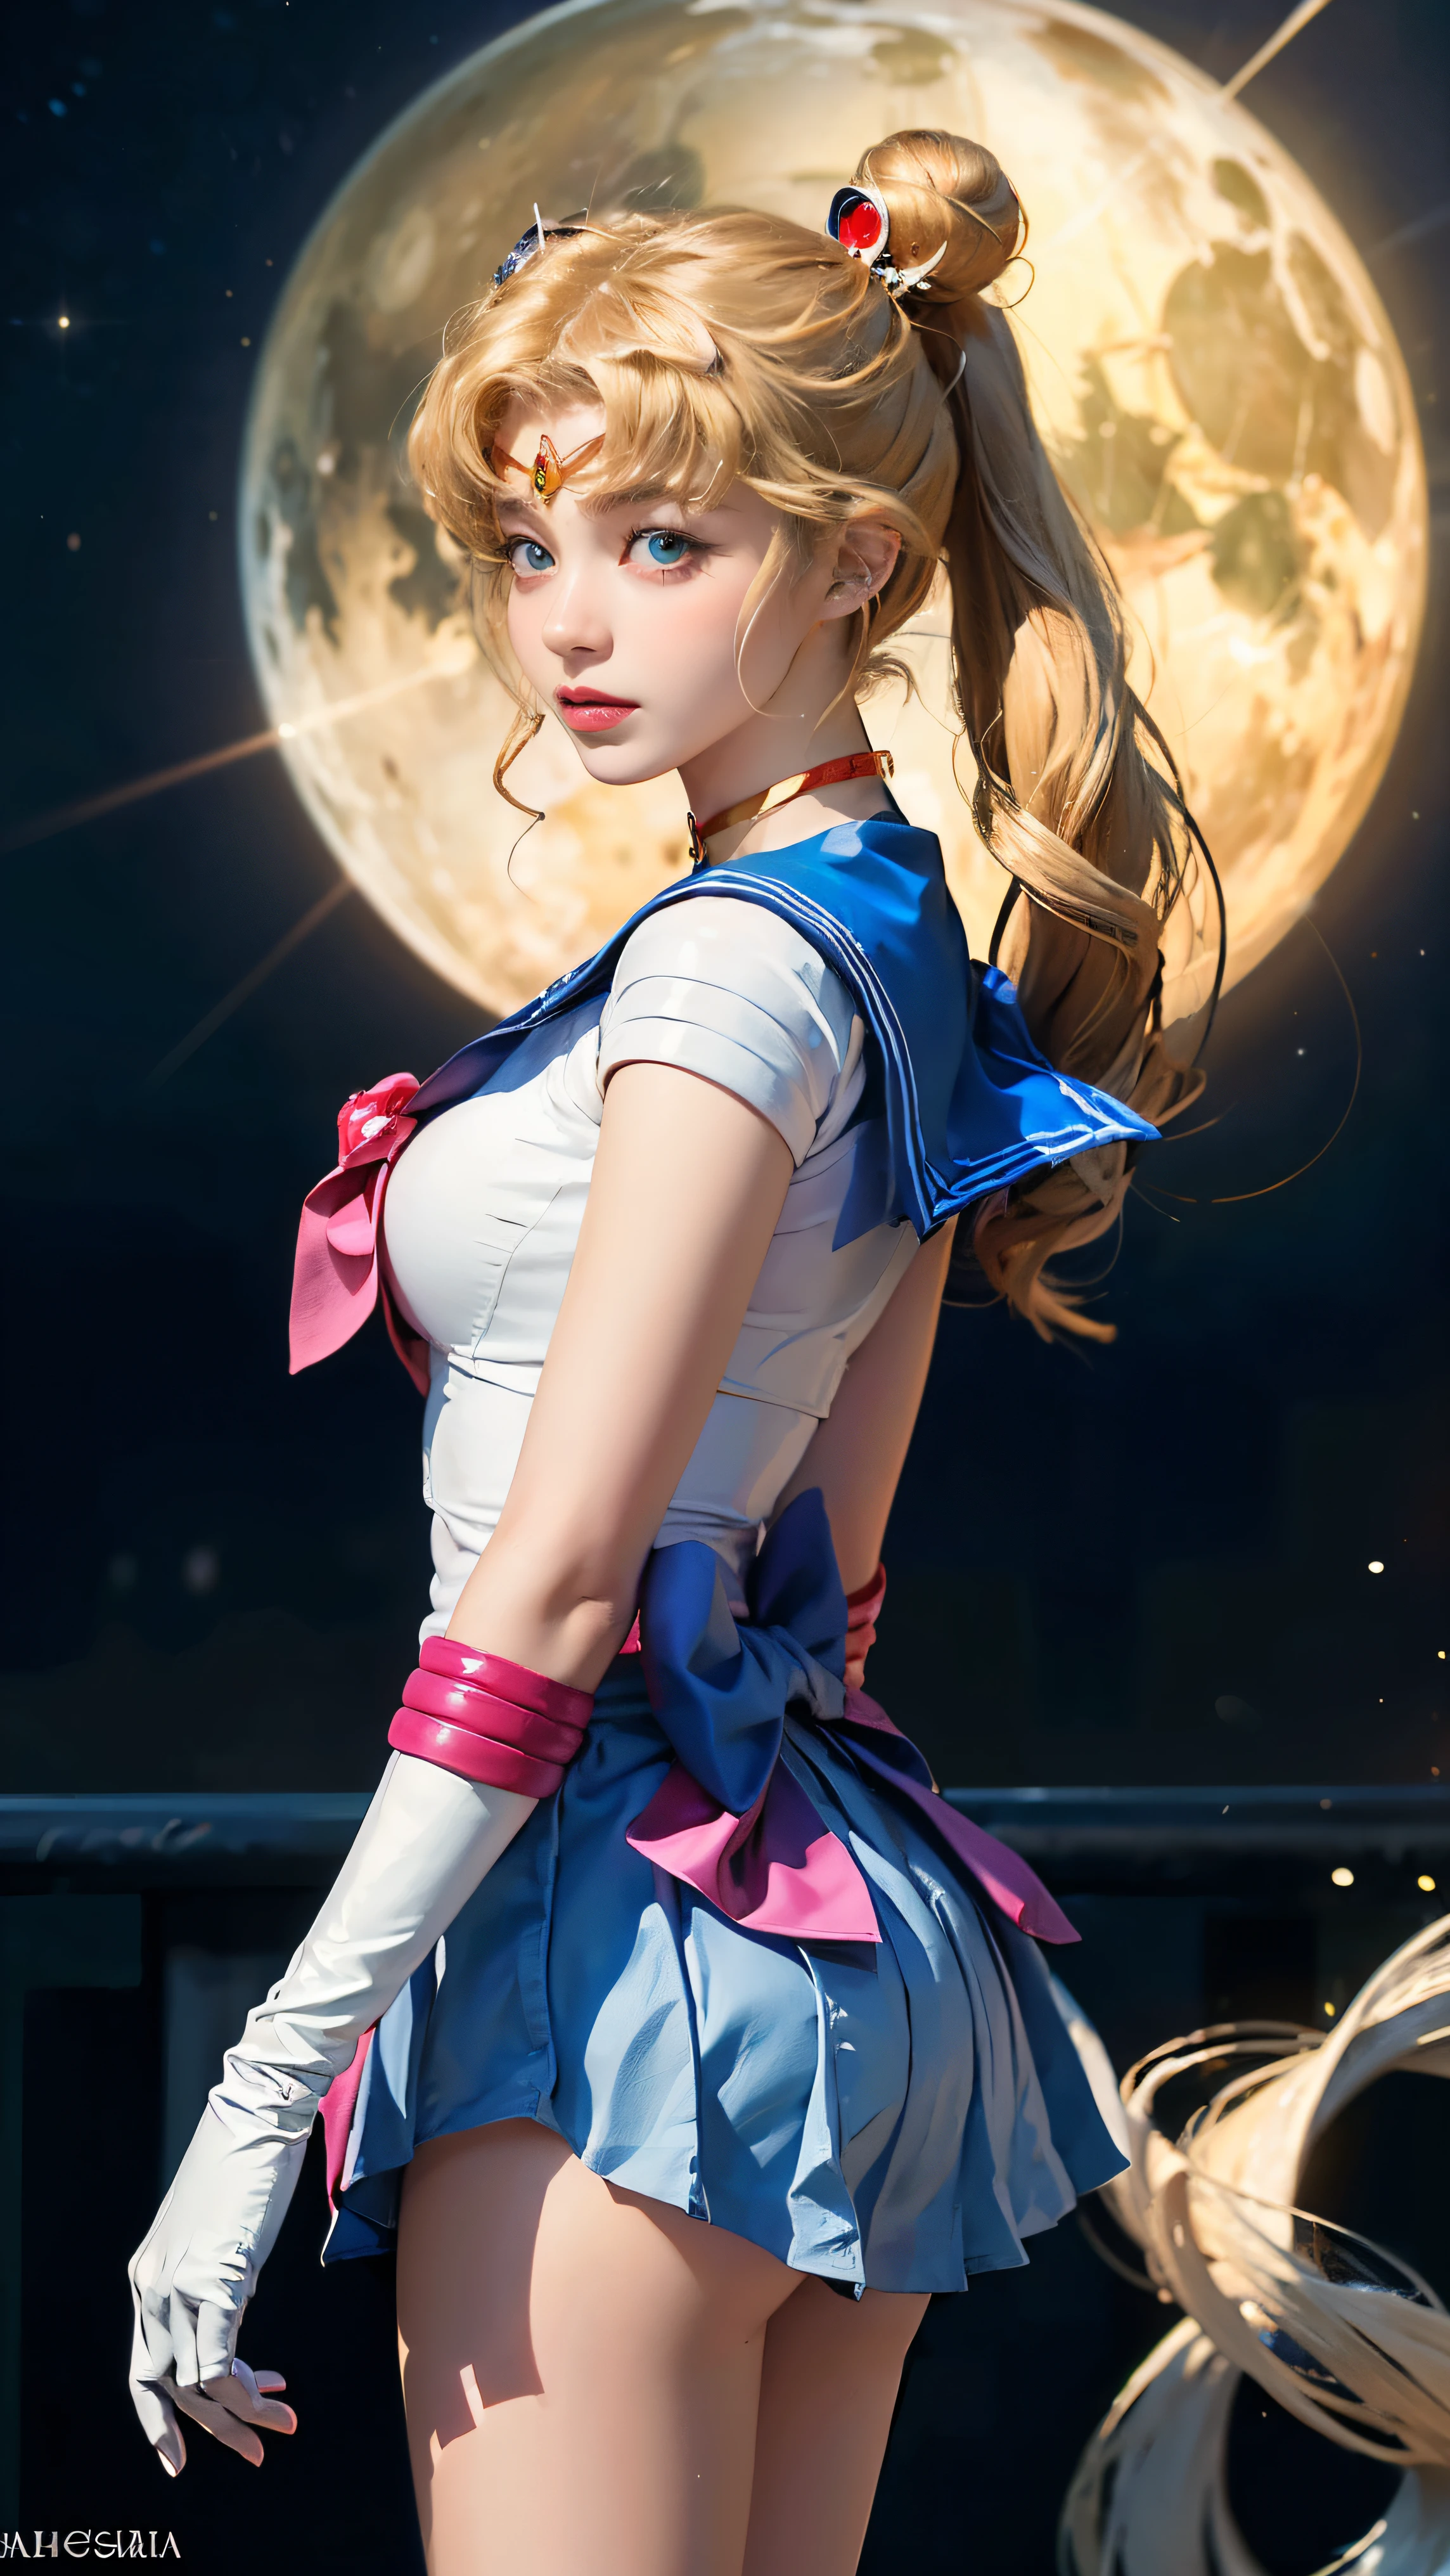 ((chef d&#39;oeuvre:1.4)、(qualité supérieure:1.4)、(réaliste:1.7))、morceau de masséter:1.4、une fille de beauté、Marin Lune is a sailor girl with a long blonde hair, Marin Lune aesthetic, Marin Lune style, inspired par Sailor Moon, Marin Lune!!!!!!!!, par Sailor Moon, the Marin Lune. Beau, fille de marin aux cheveux longs et une queue de cheval pointant vers quelque chose, Marin Lune!!!!!!!!, Marin Lune style, Marin Lune aesthetic, inspired par Sailor Moon, the Marin Lune. Beau, par Sailor Moon, image divulguée, dessin animé, Personnage d&#39;Anime, pose d&#39;anime, shoujo classique, le marin galaxie. Beau, Yami Kawaii, Style artistique animé des années 8 0, remonter le moral